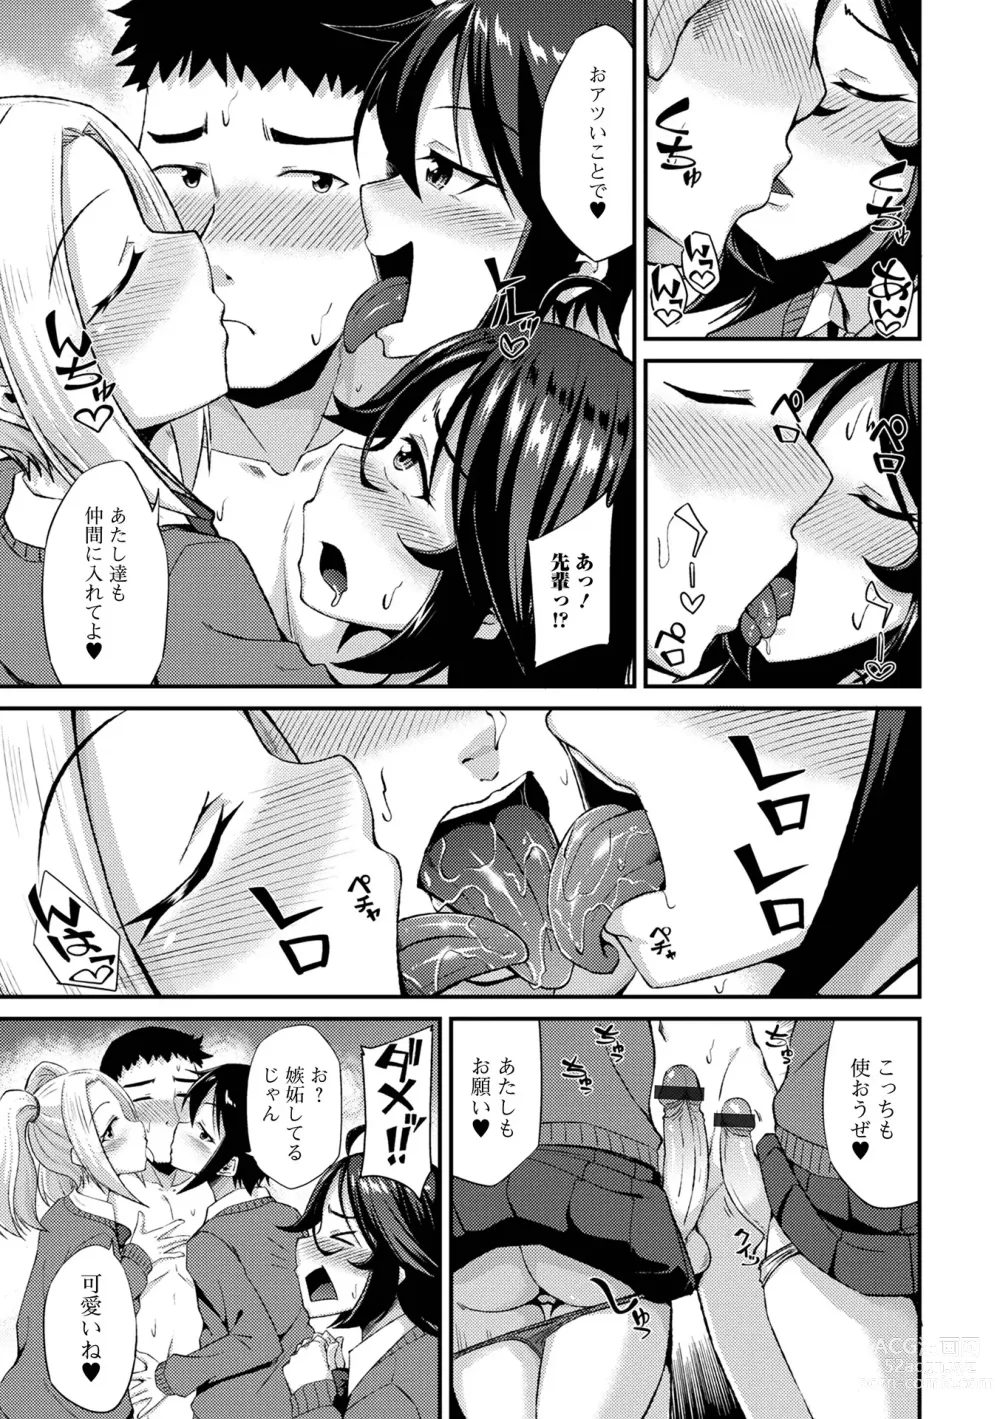 Page 11 of manga Gekkan Web Otoko no Ko-llection! S Vol. 94